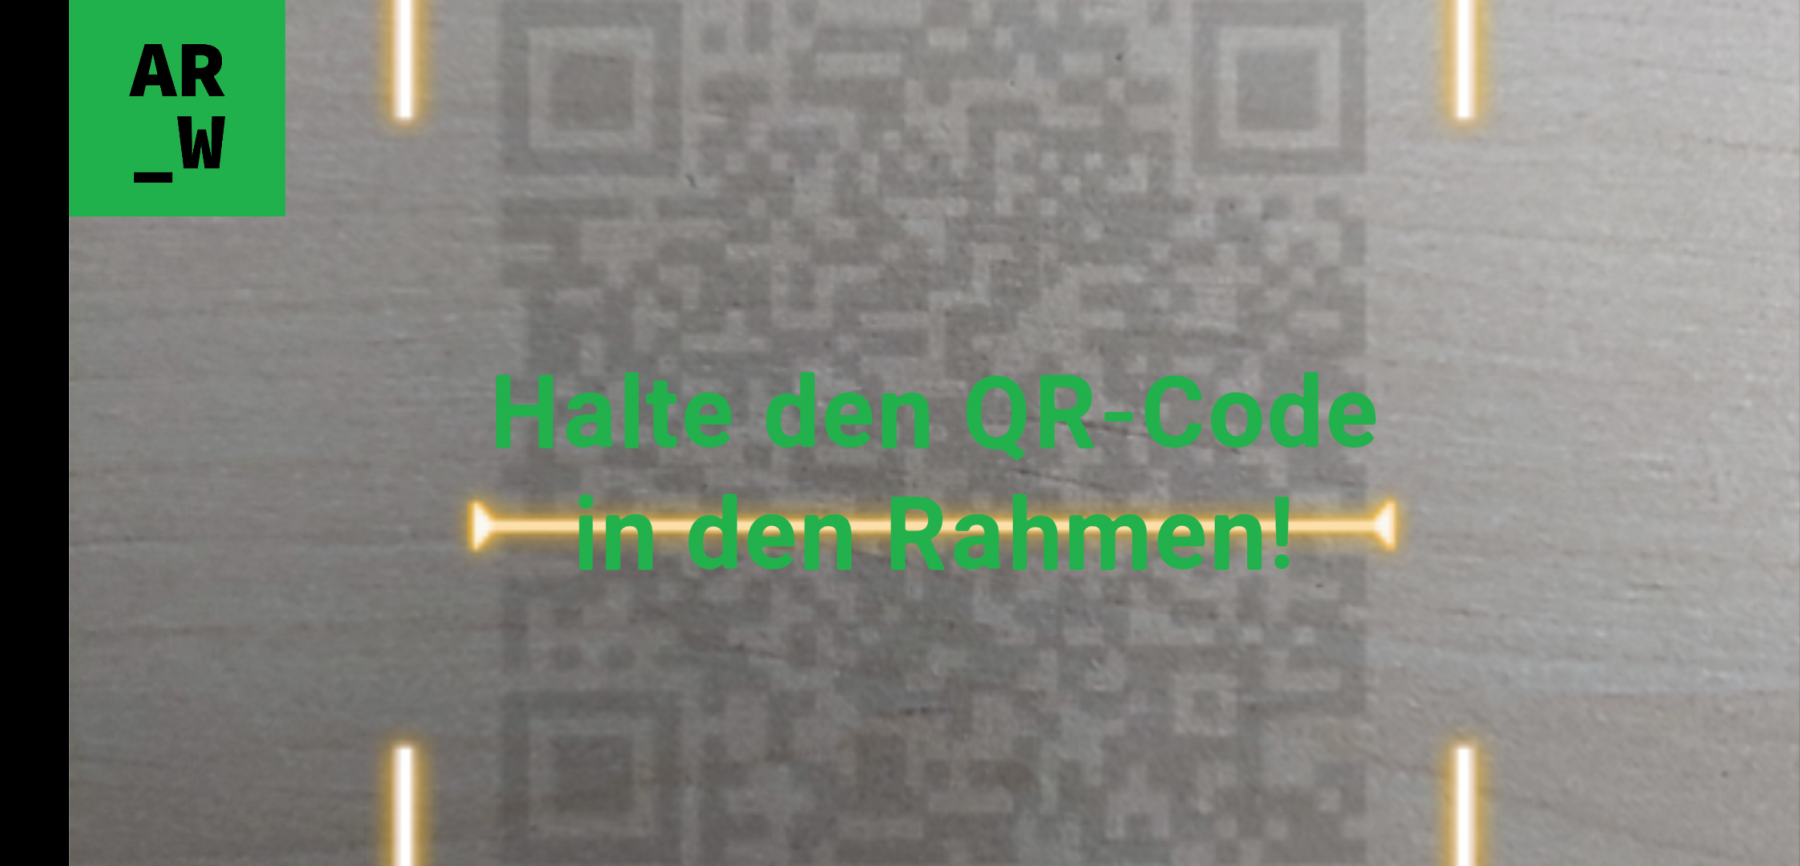 QR-Code für scannen